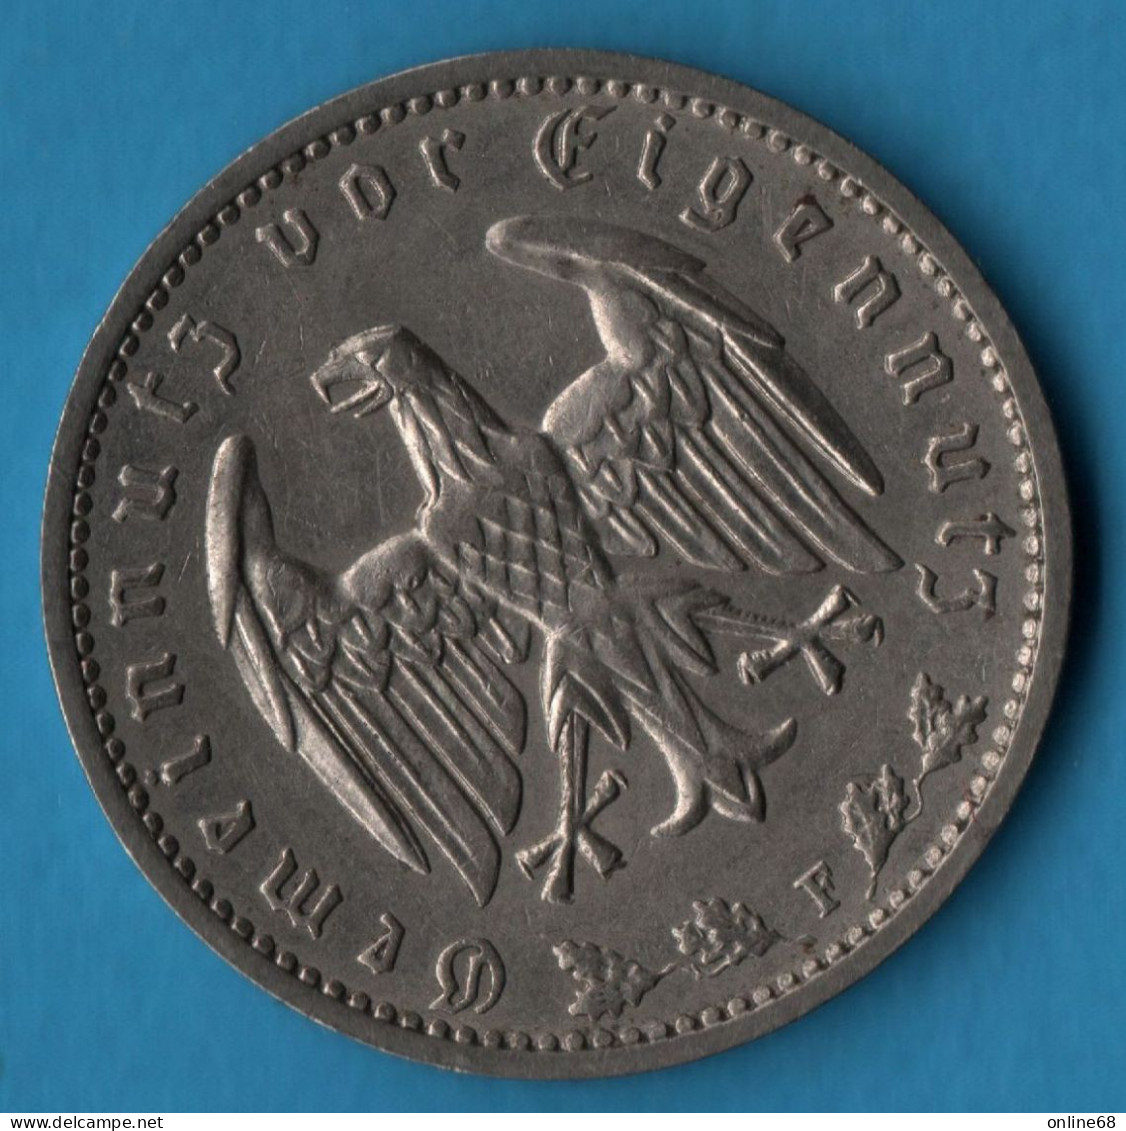 DEUTSCHES REICH 1 REICHSMARK 1937 F KM# 78 - 1 Reichsmark